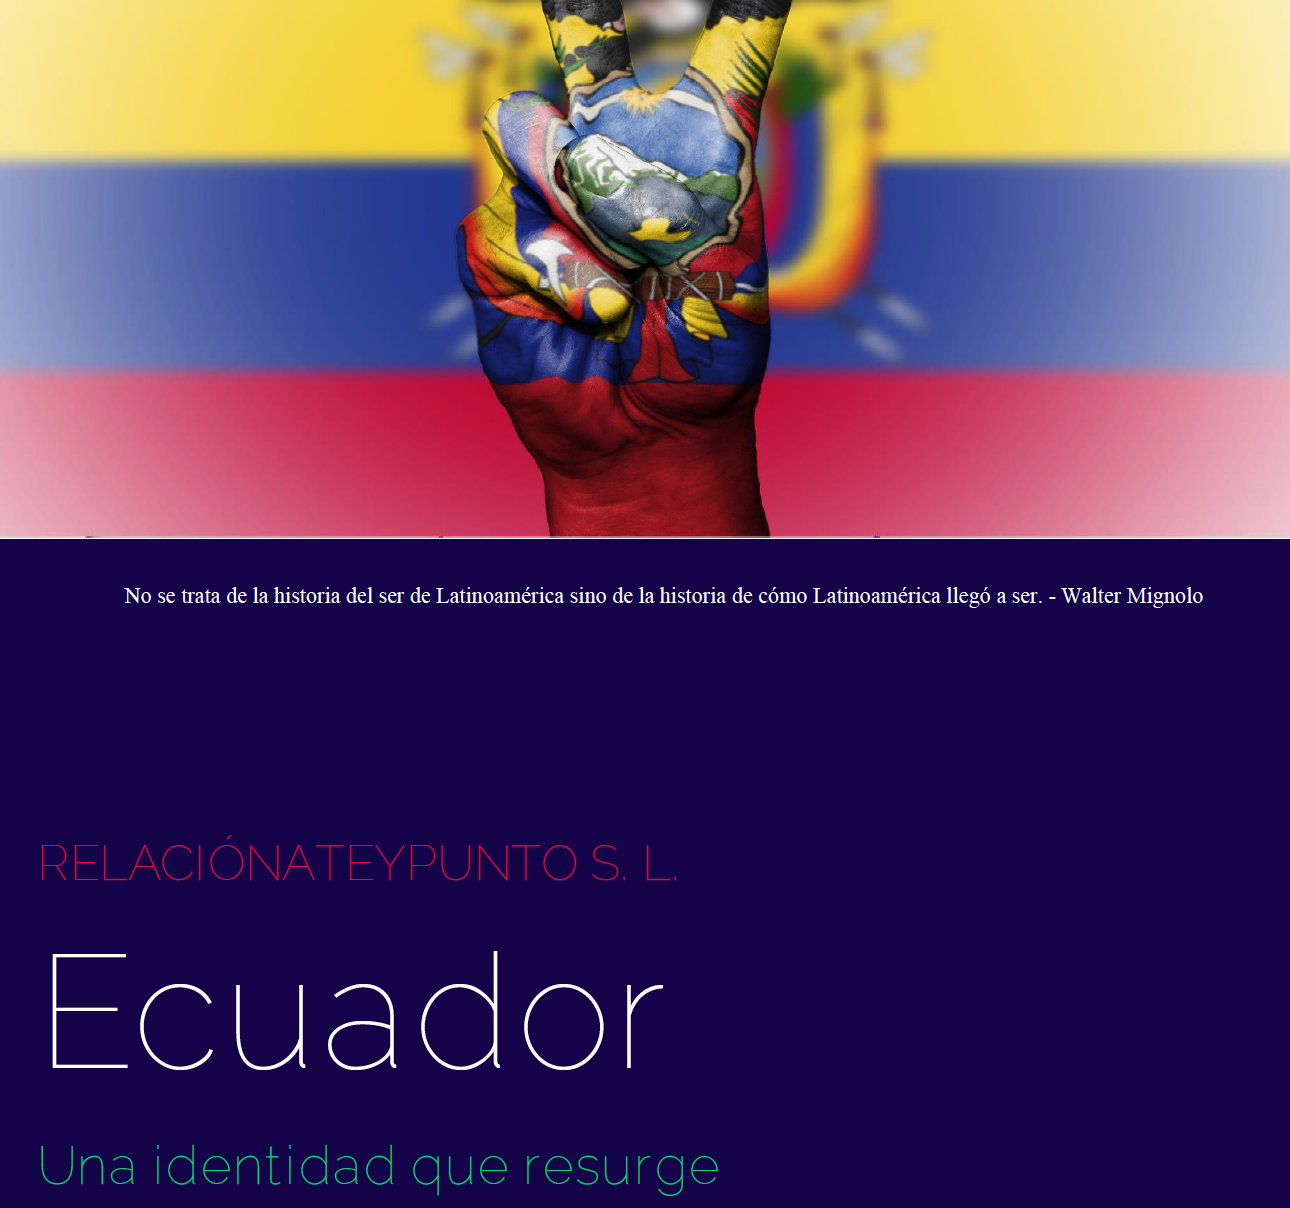 Cuestión identitaria en Ecuador